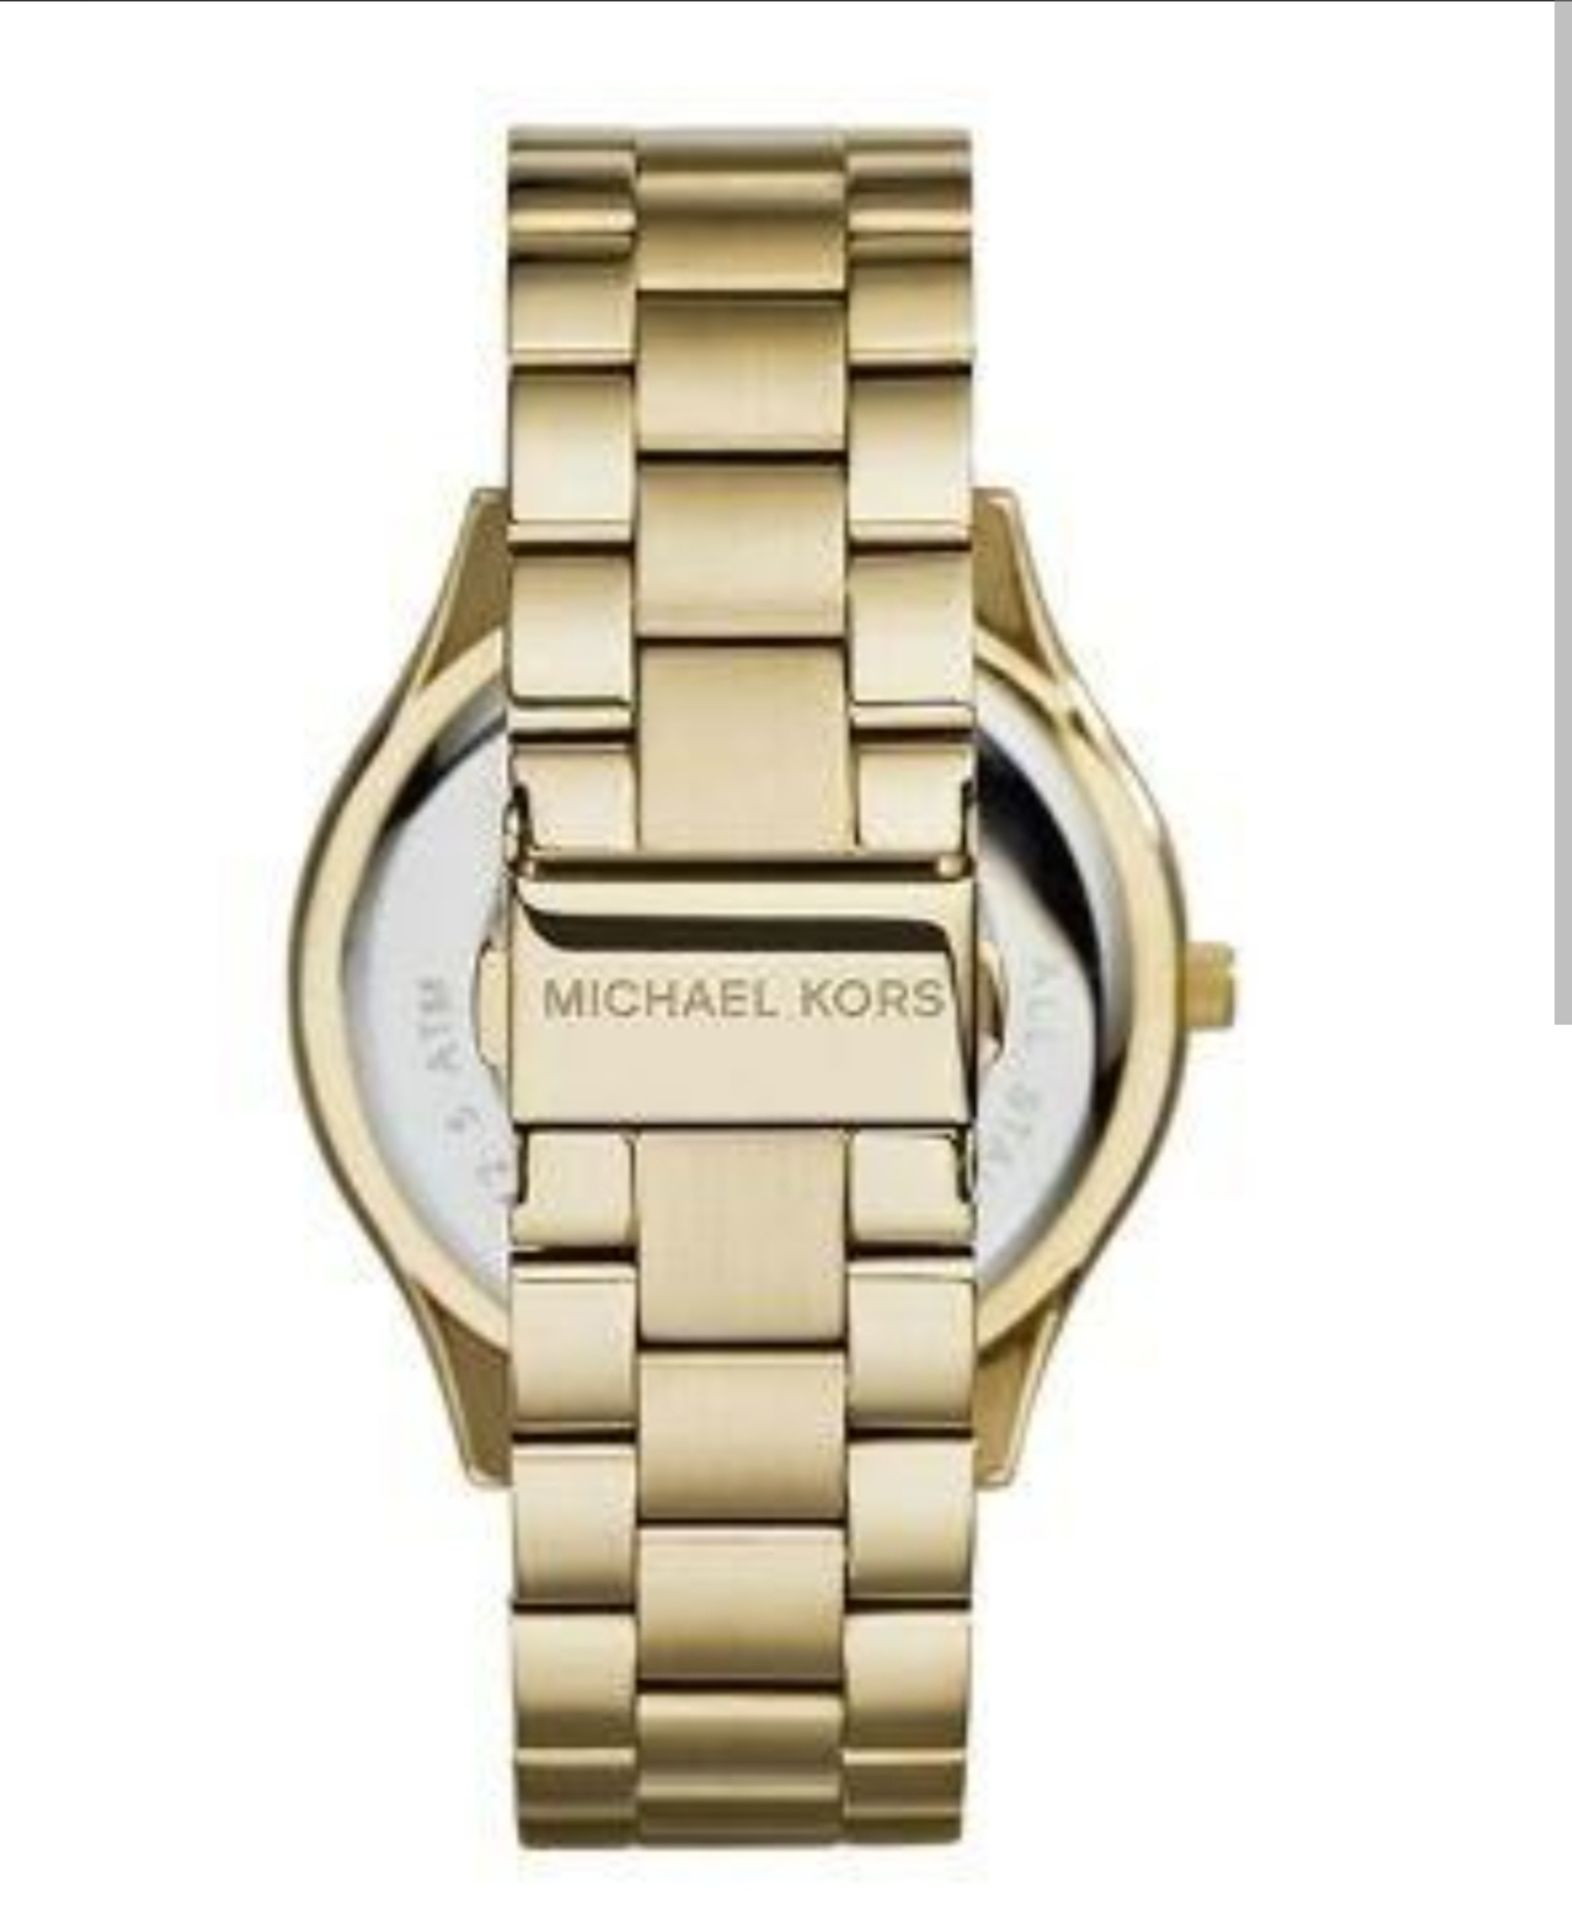 Michael Kors MK3478 Ladies Slim Runway Watch Gold Bracelet Black Dial - Image 7 of 9